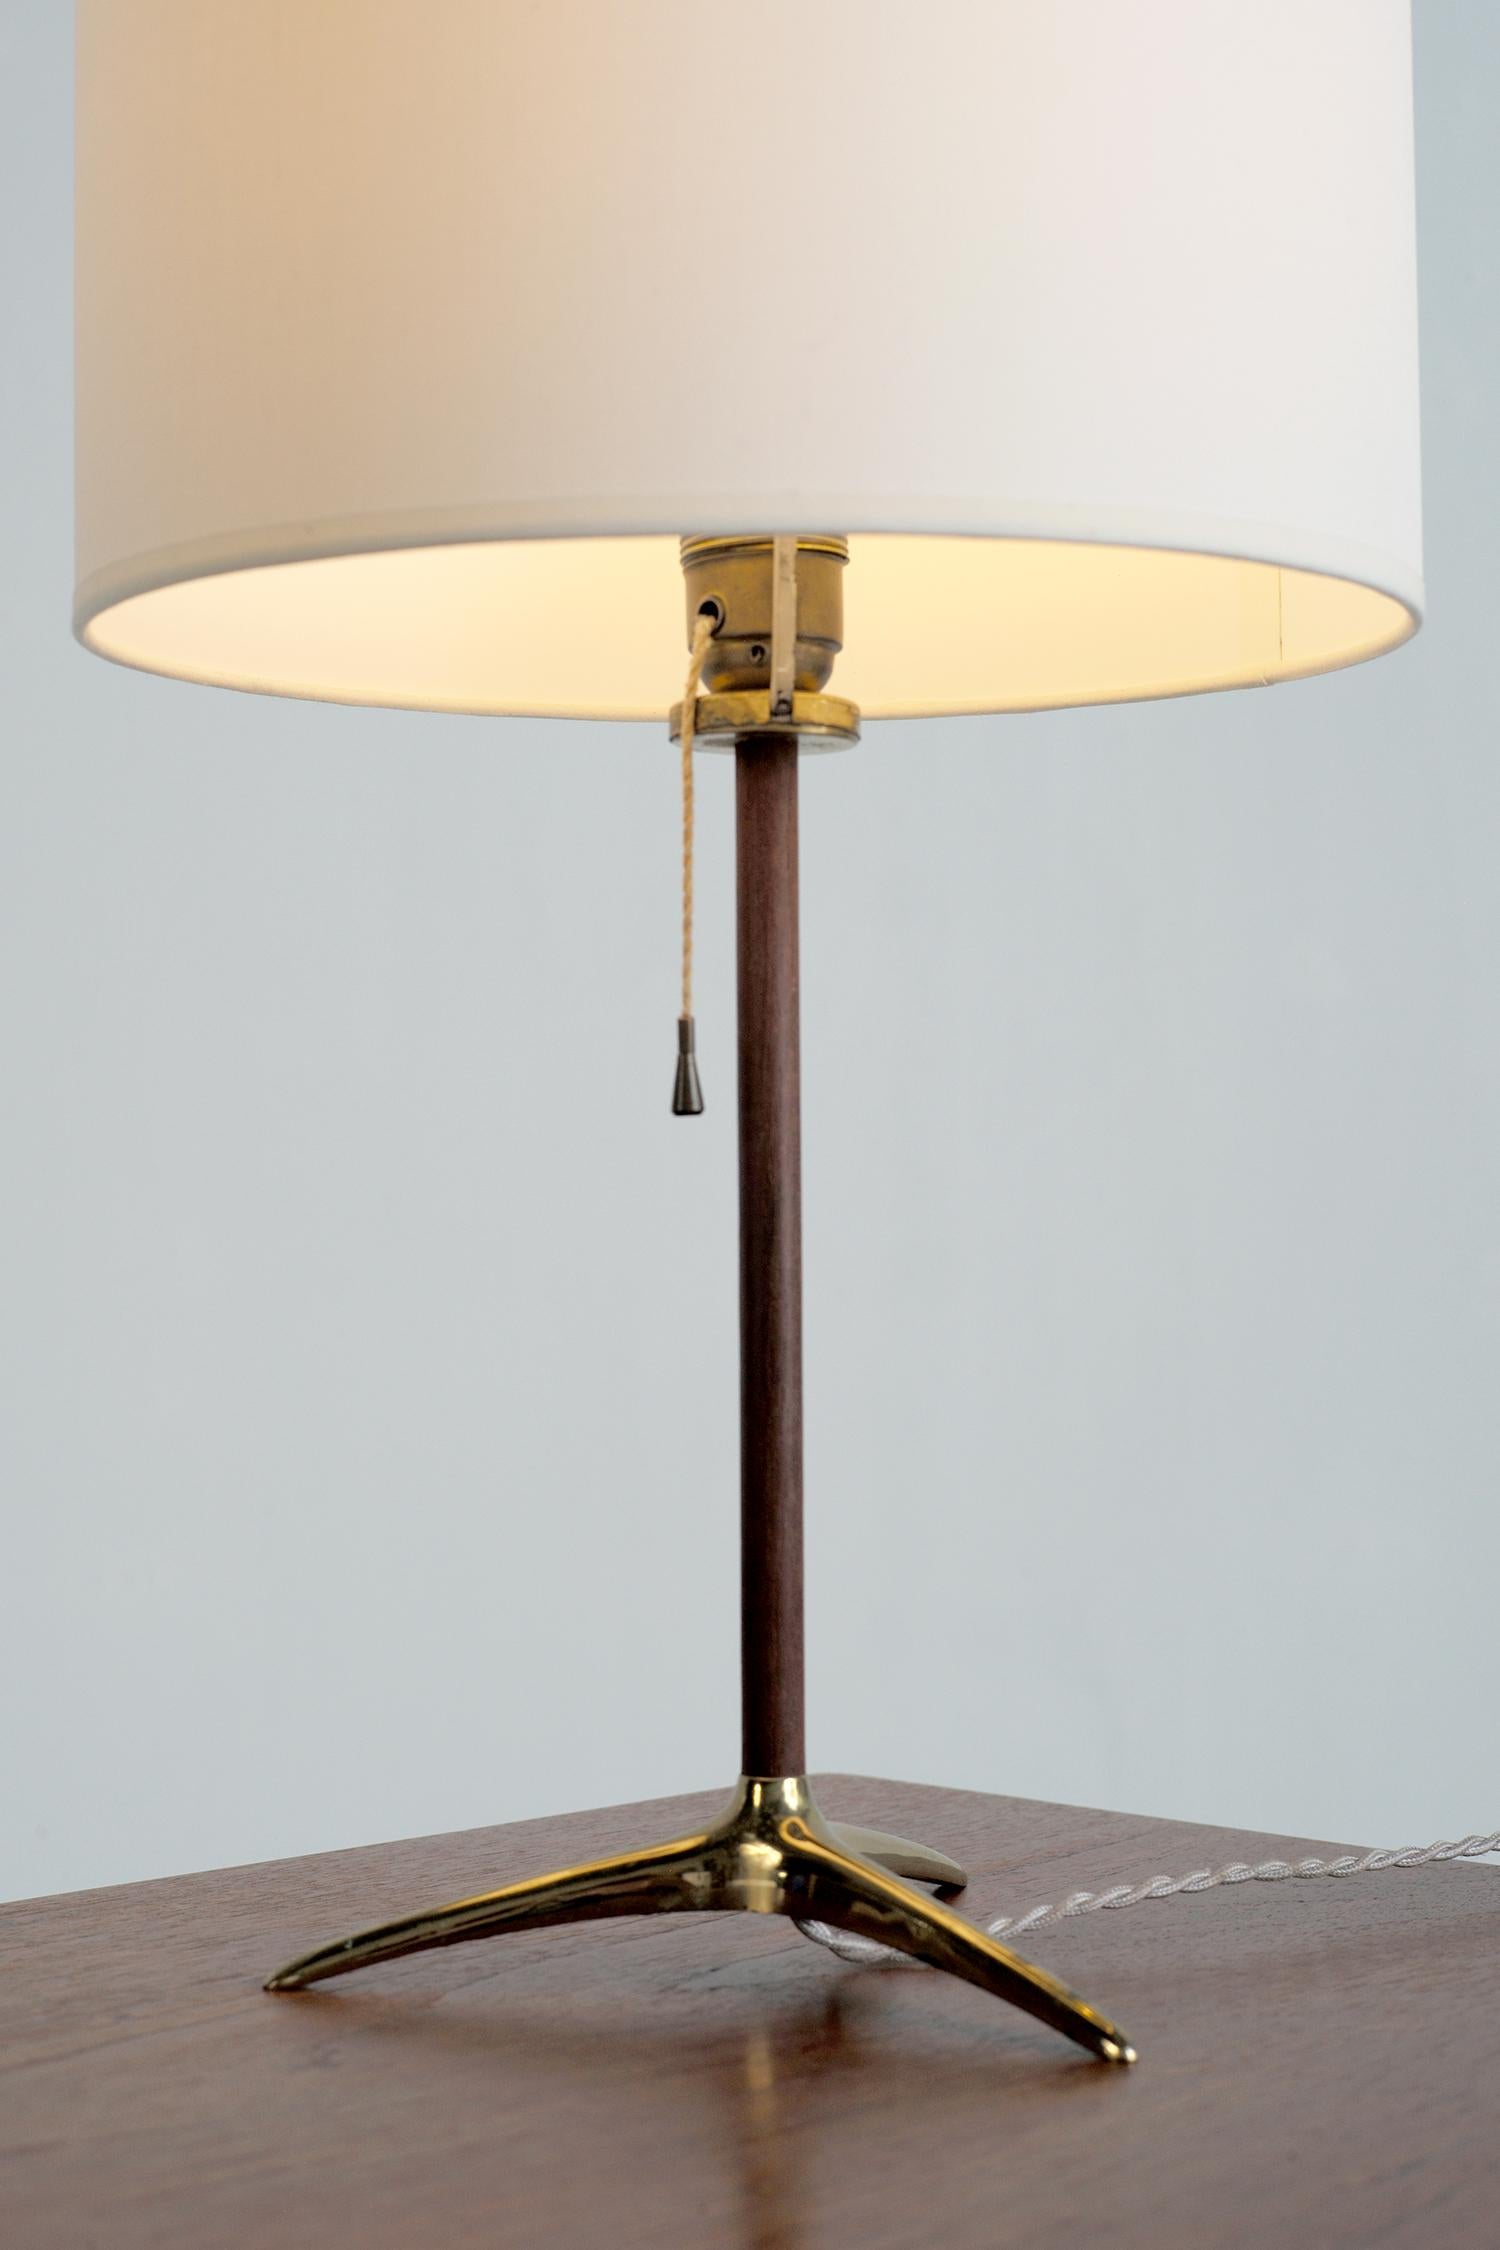 Elegante Tischleuchte von Gérard Thurston, USA 1950. Sie ruht auf einem dreibeinigen Sockel aus vergoldetem Messing, der Lauf ist aus Nussbaumholz. Die Zündung wird über einen Zugschalter betätigt. Der zylindrische Lampenschirm ist oben mit einer